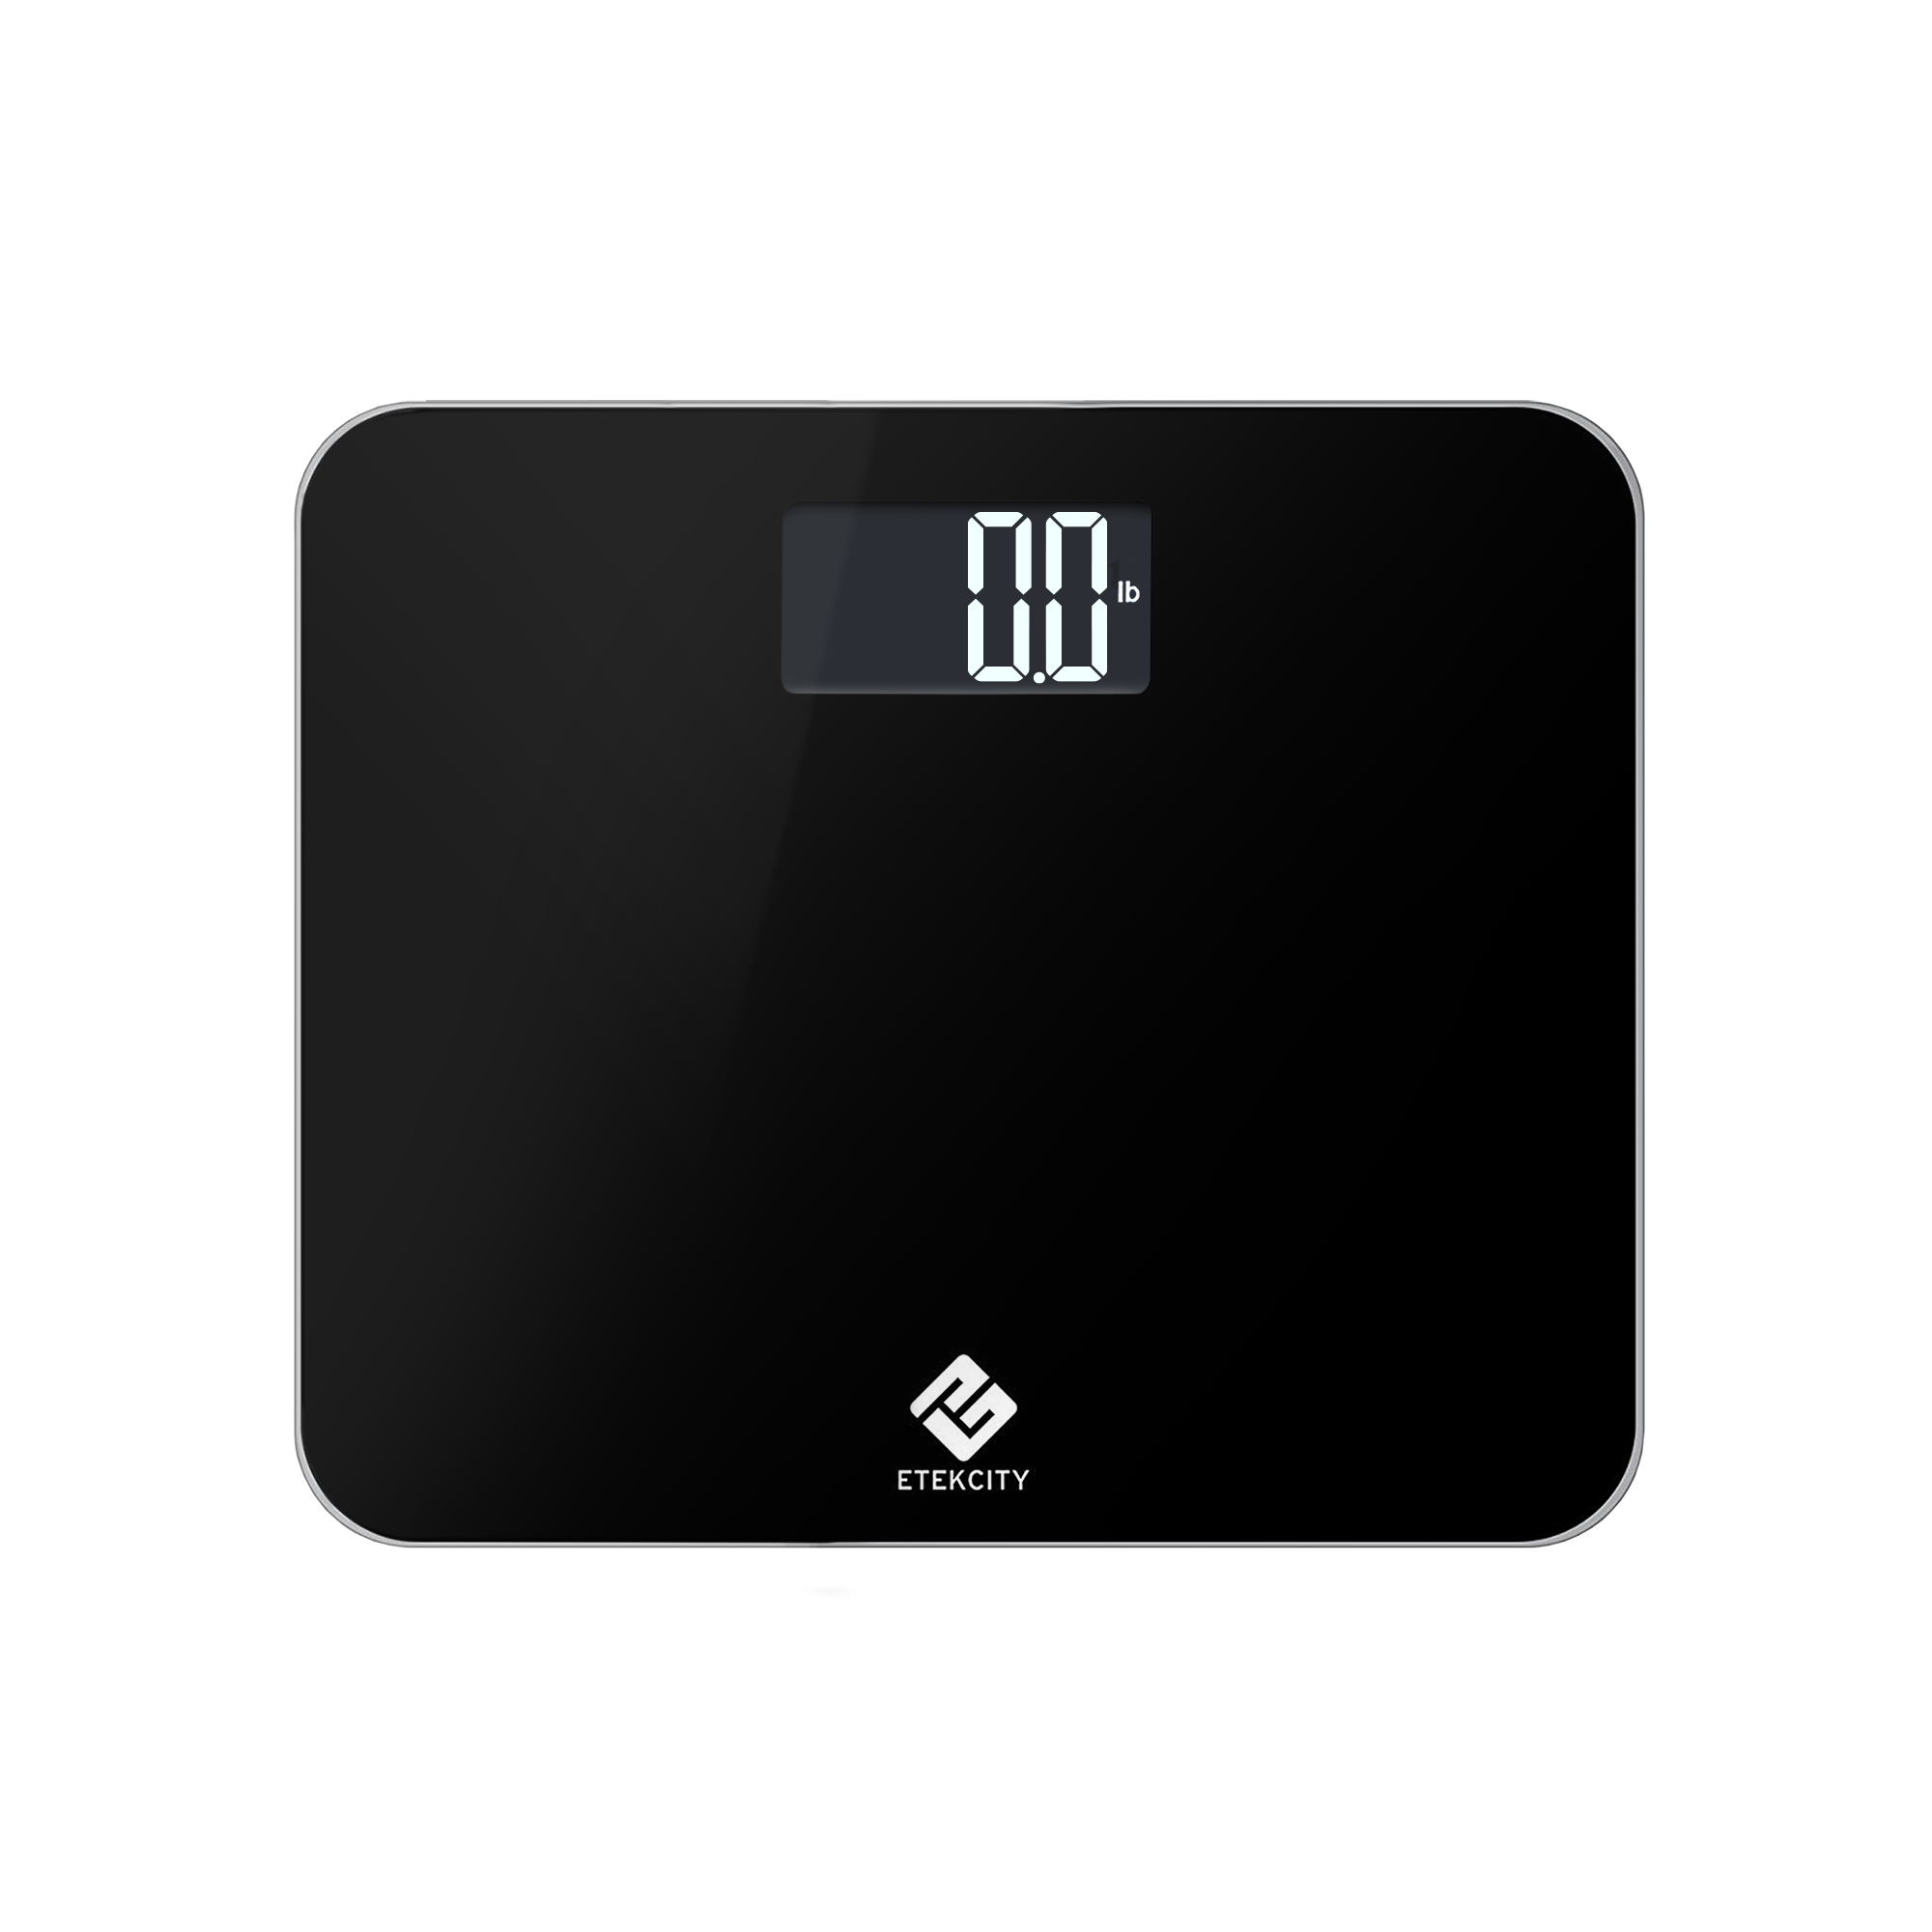  Etekcity Scale for Body Weight, Bathroom Digital